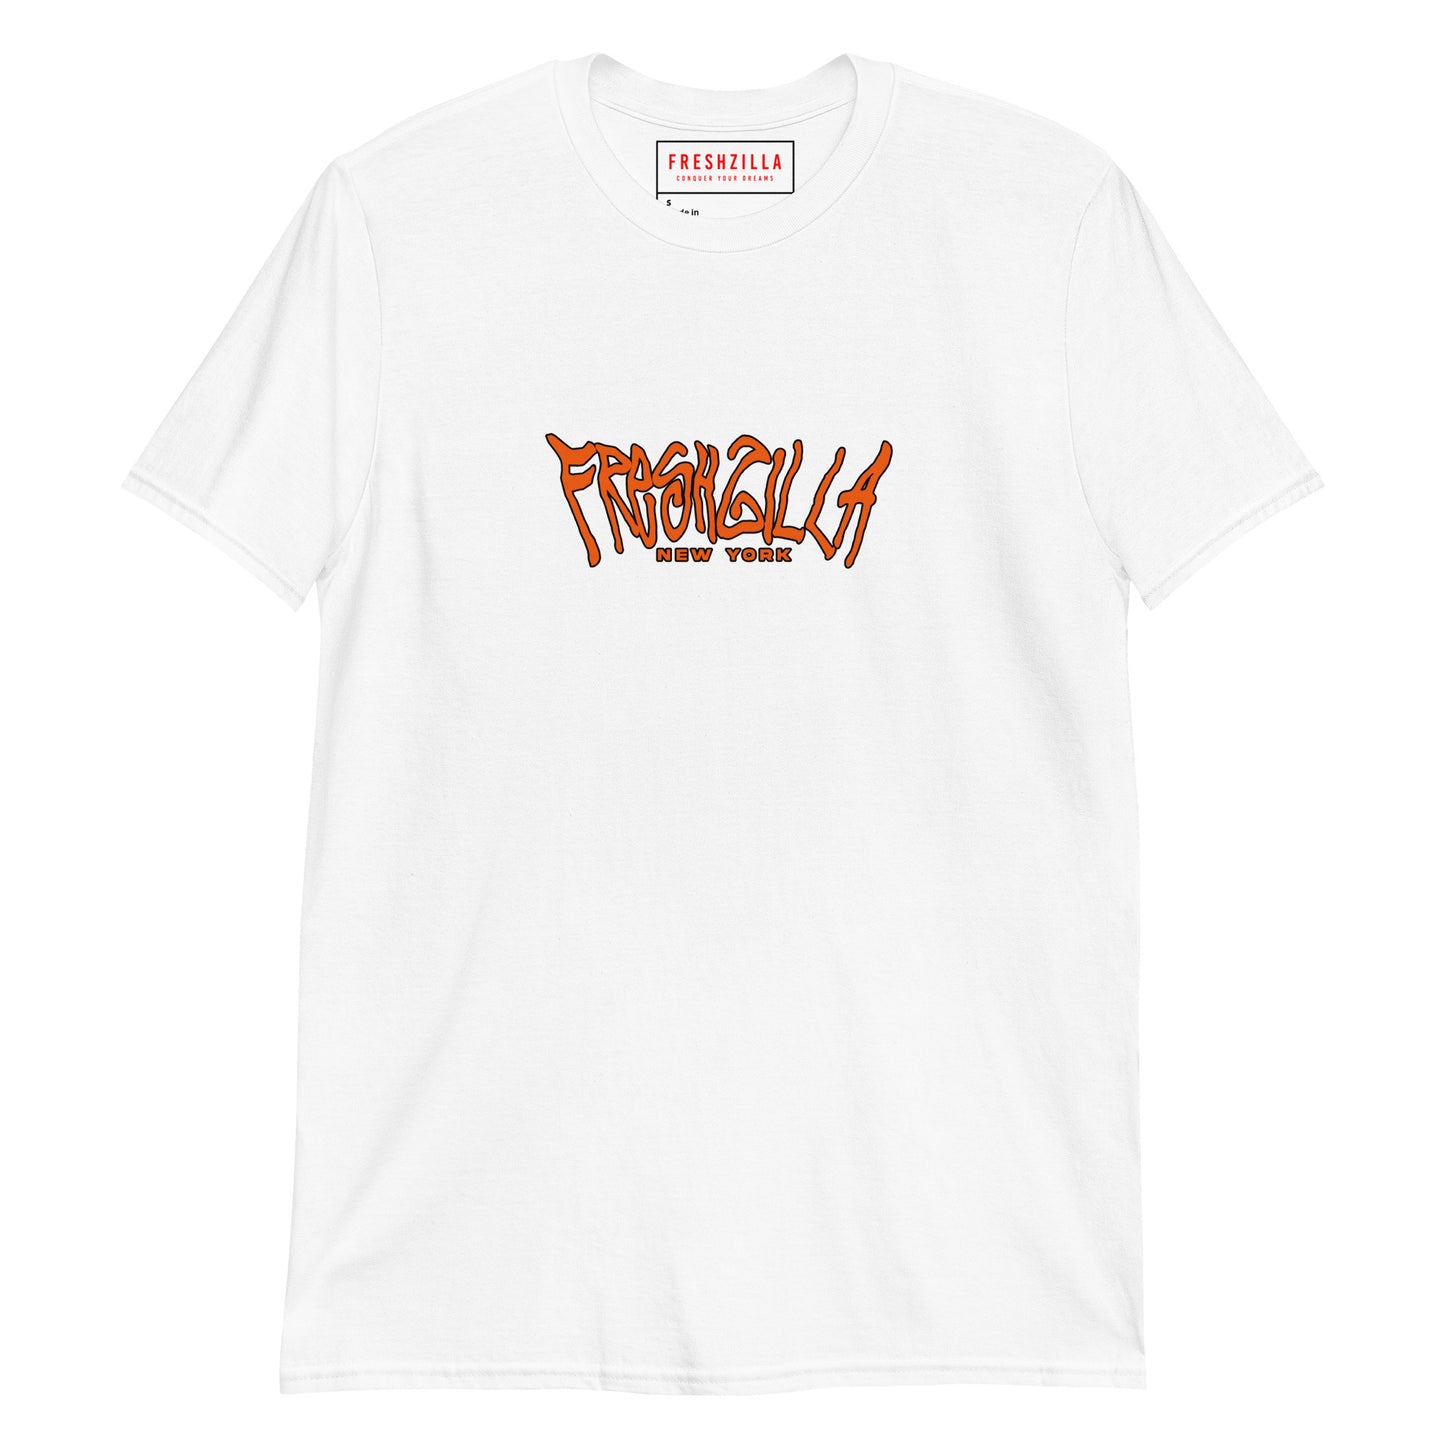 FRESHZILLA© "New York' T-Shirt Orange